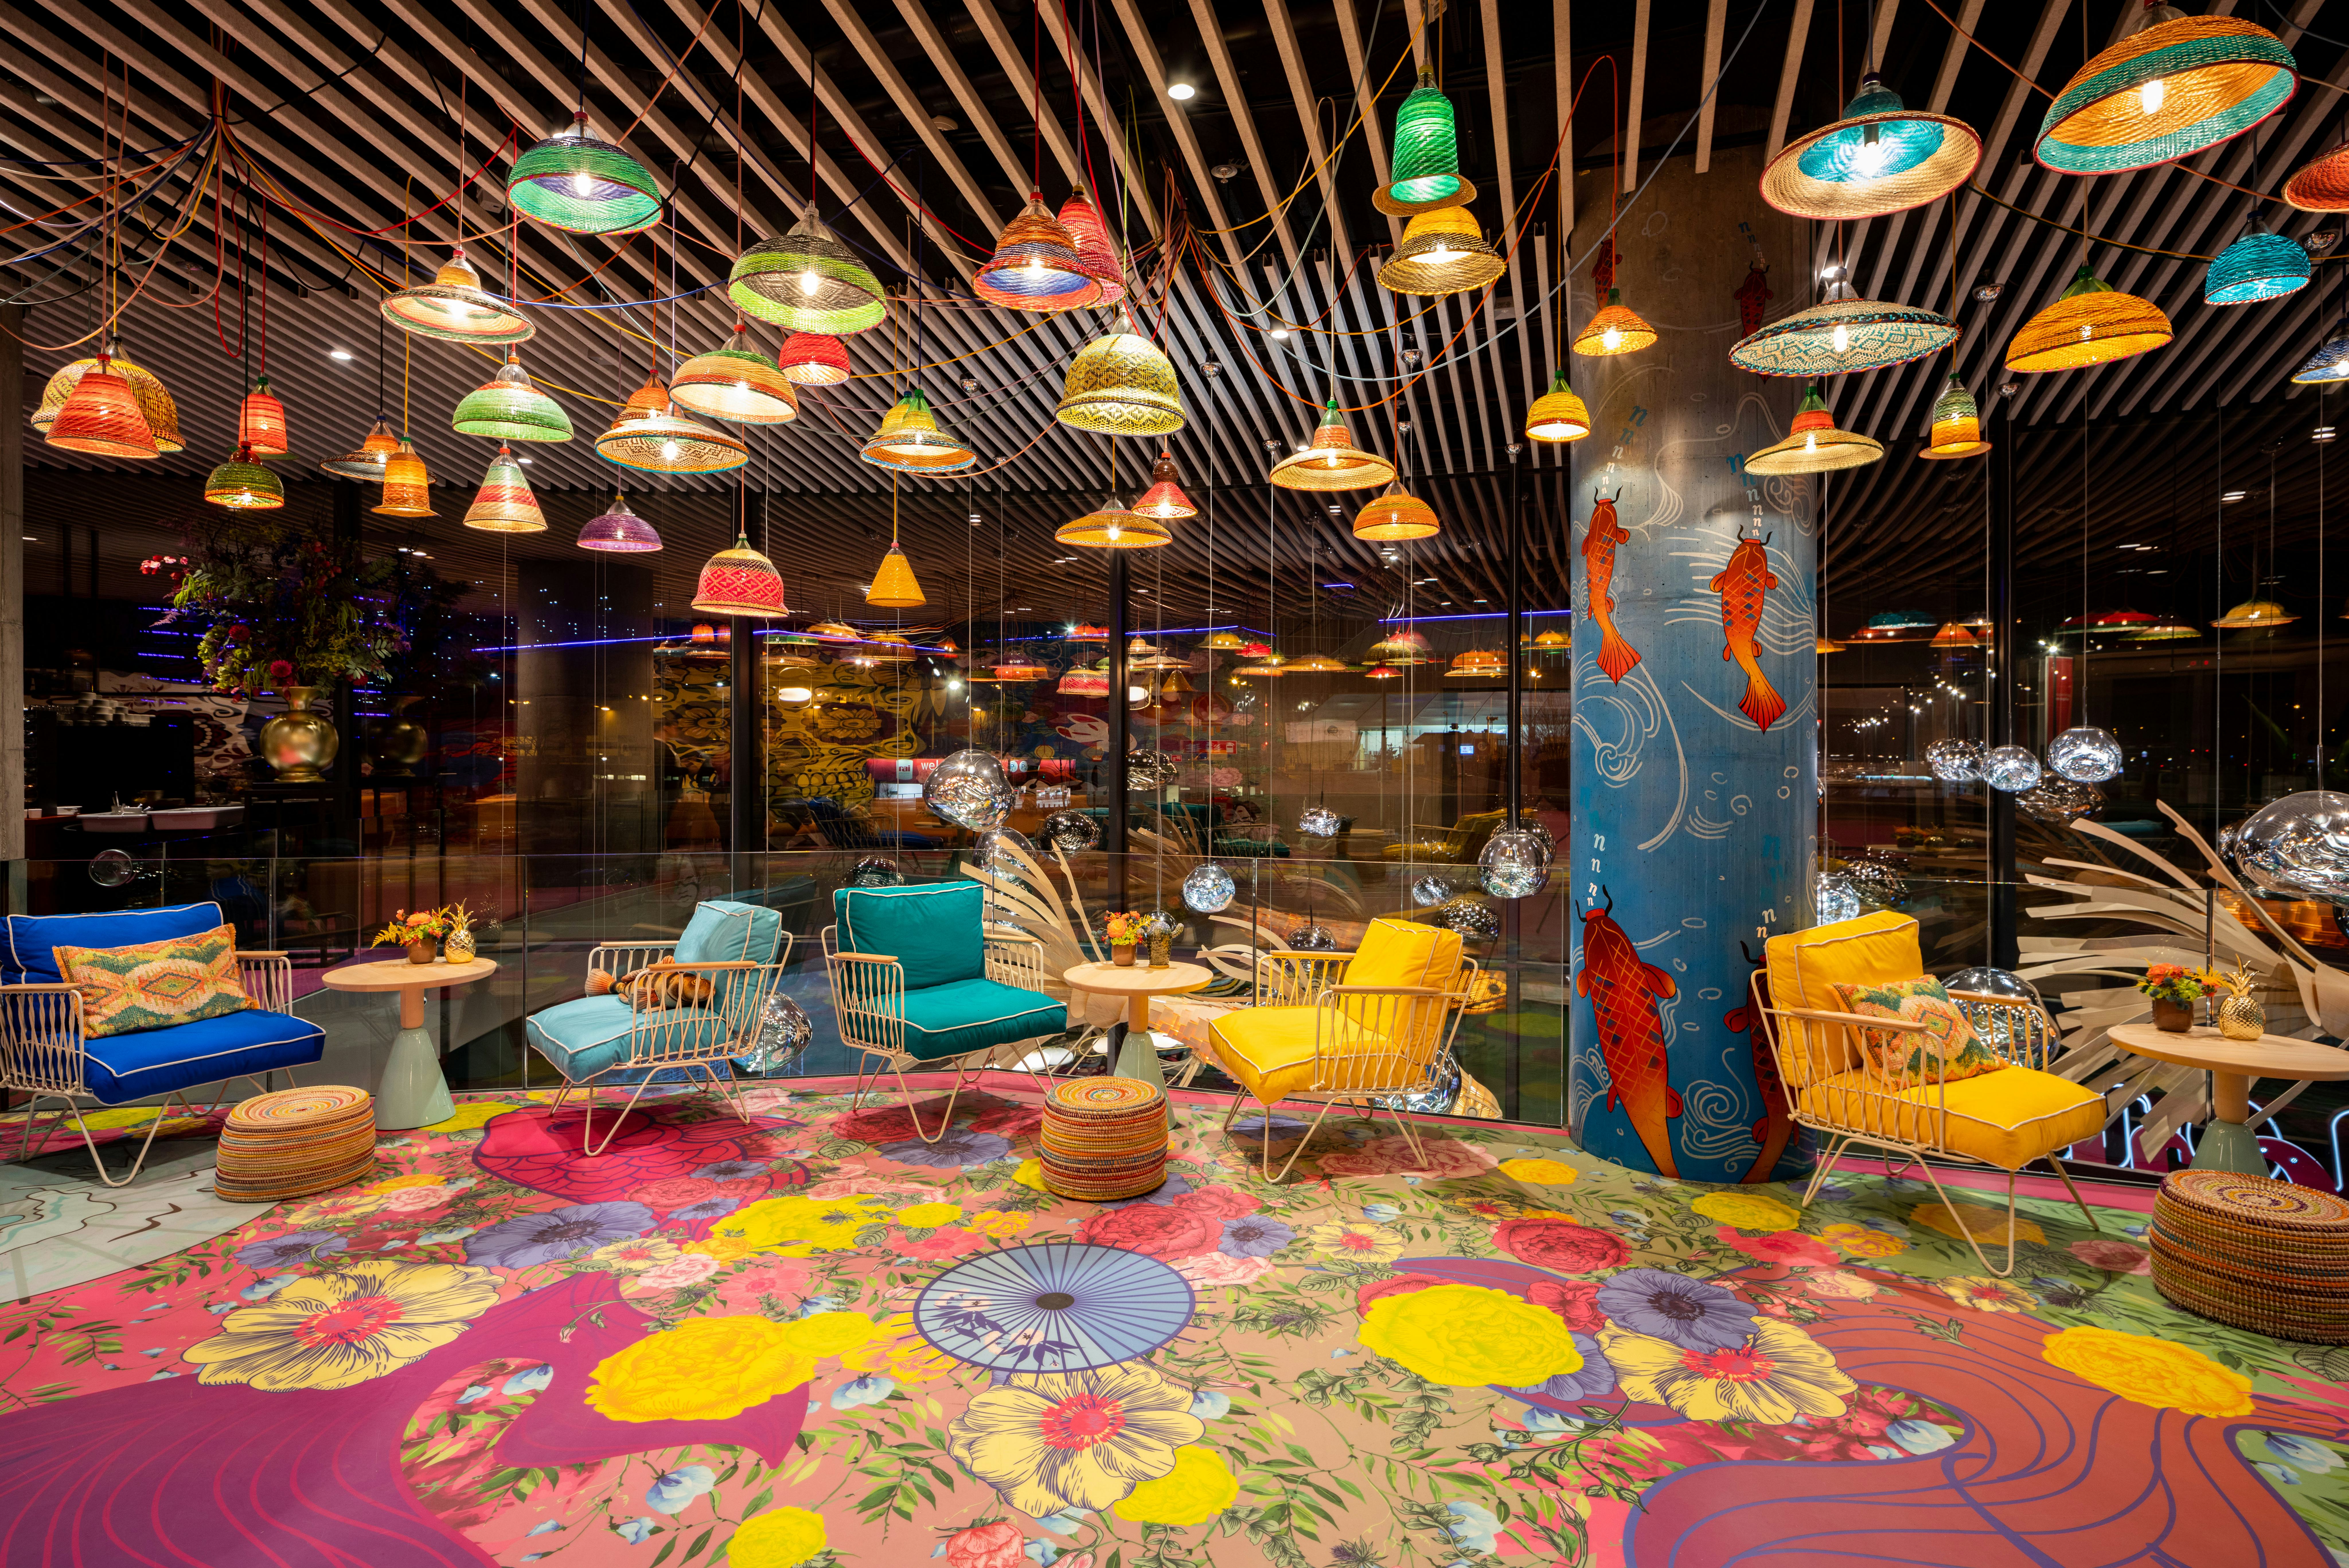 Binnenkijken bij kleurrijke 'The Cultures Hub' nhow Amsterdam RAI